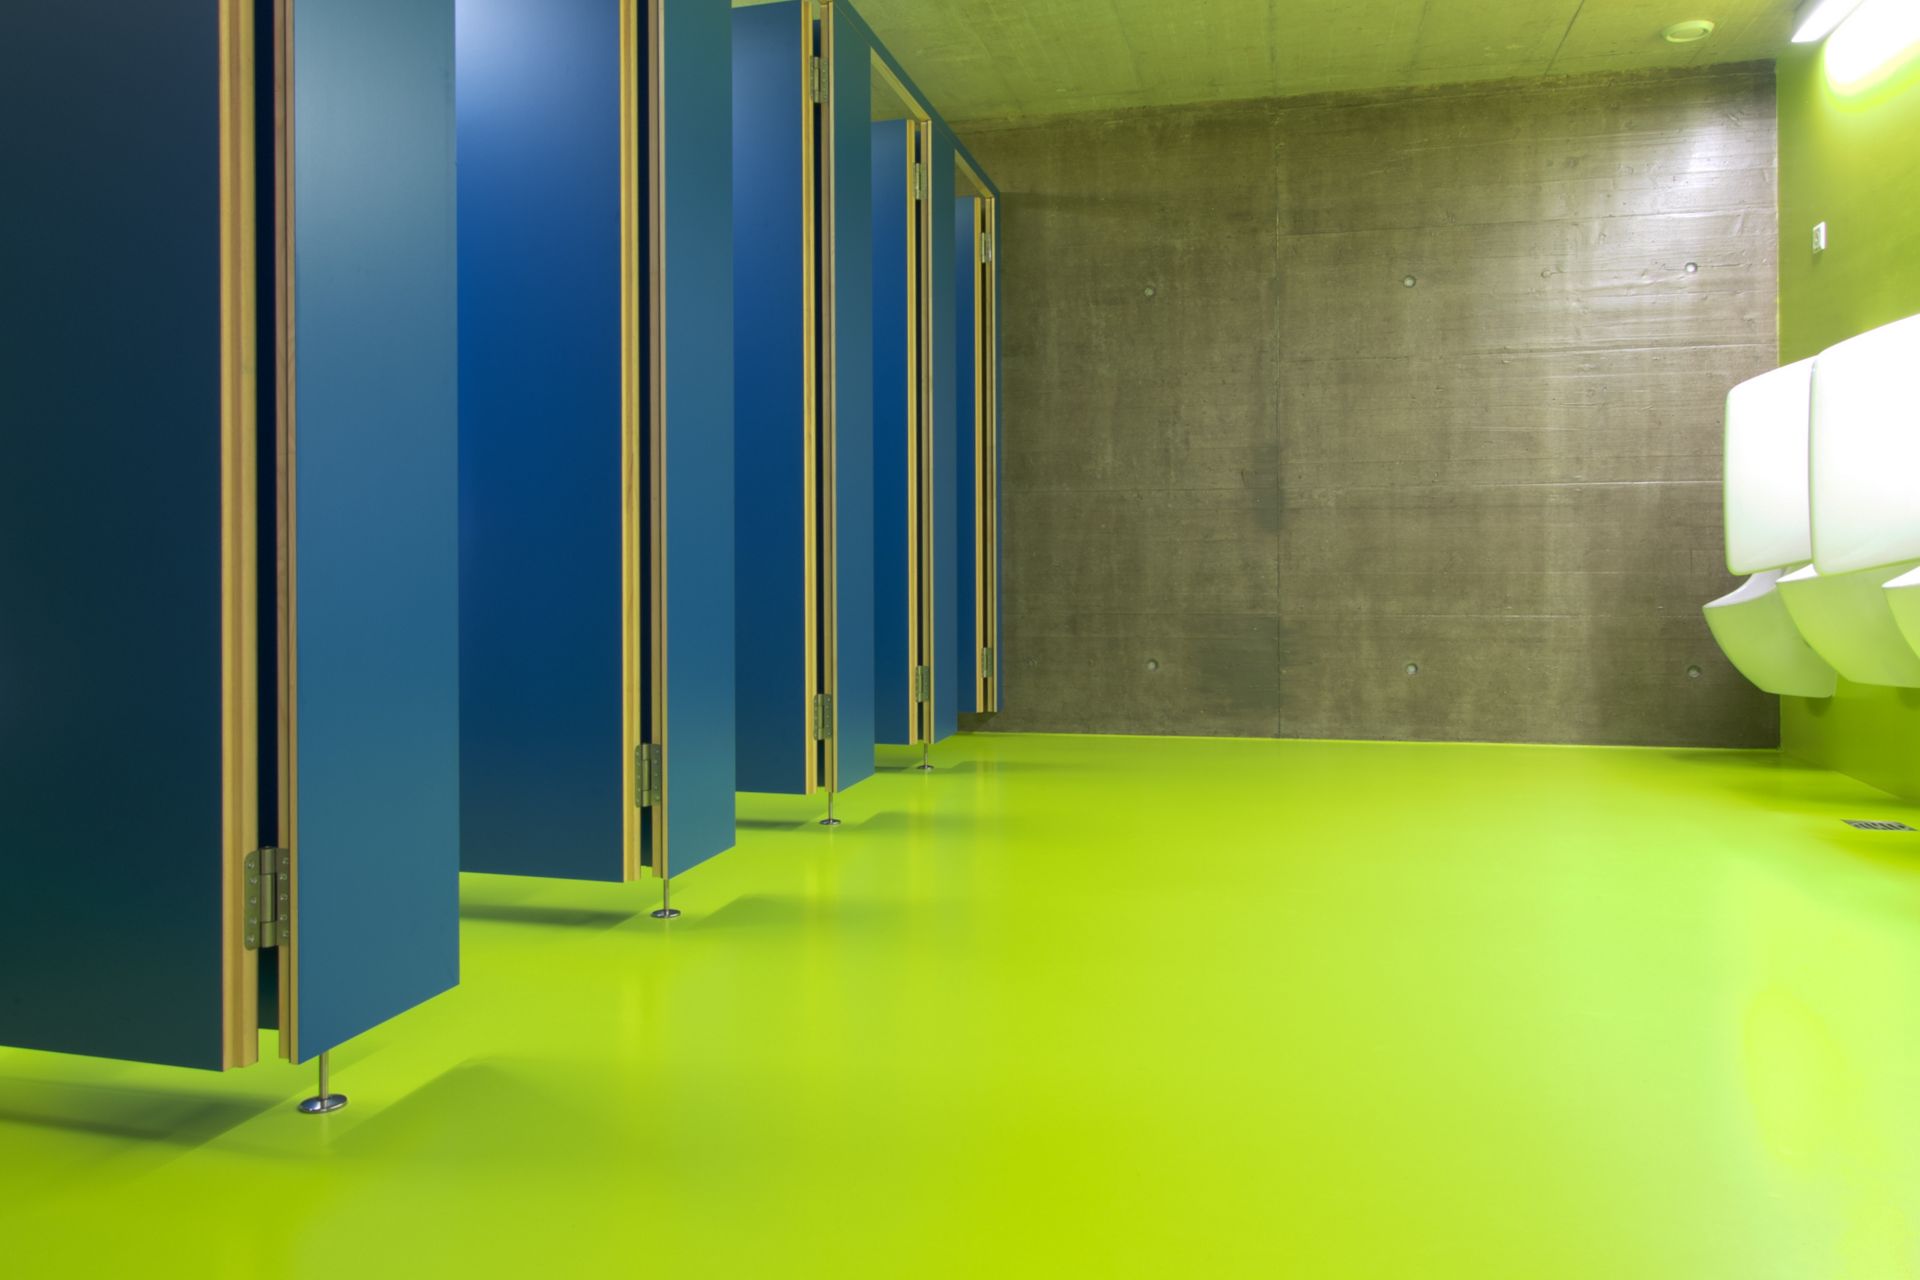 Decorative bathroom floor with Sikafloor at Seeblick Sport Center in Switzerland